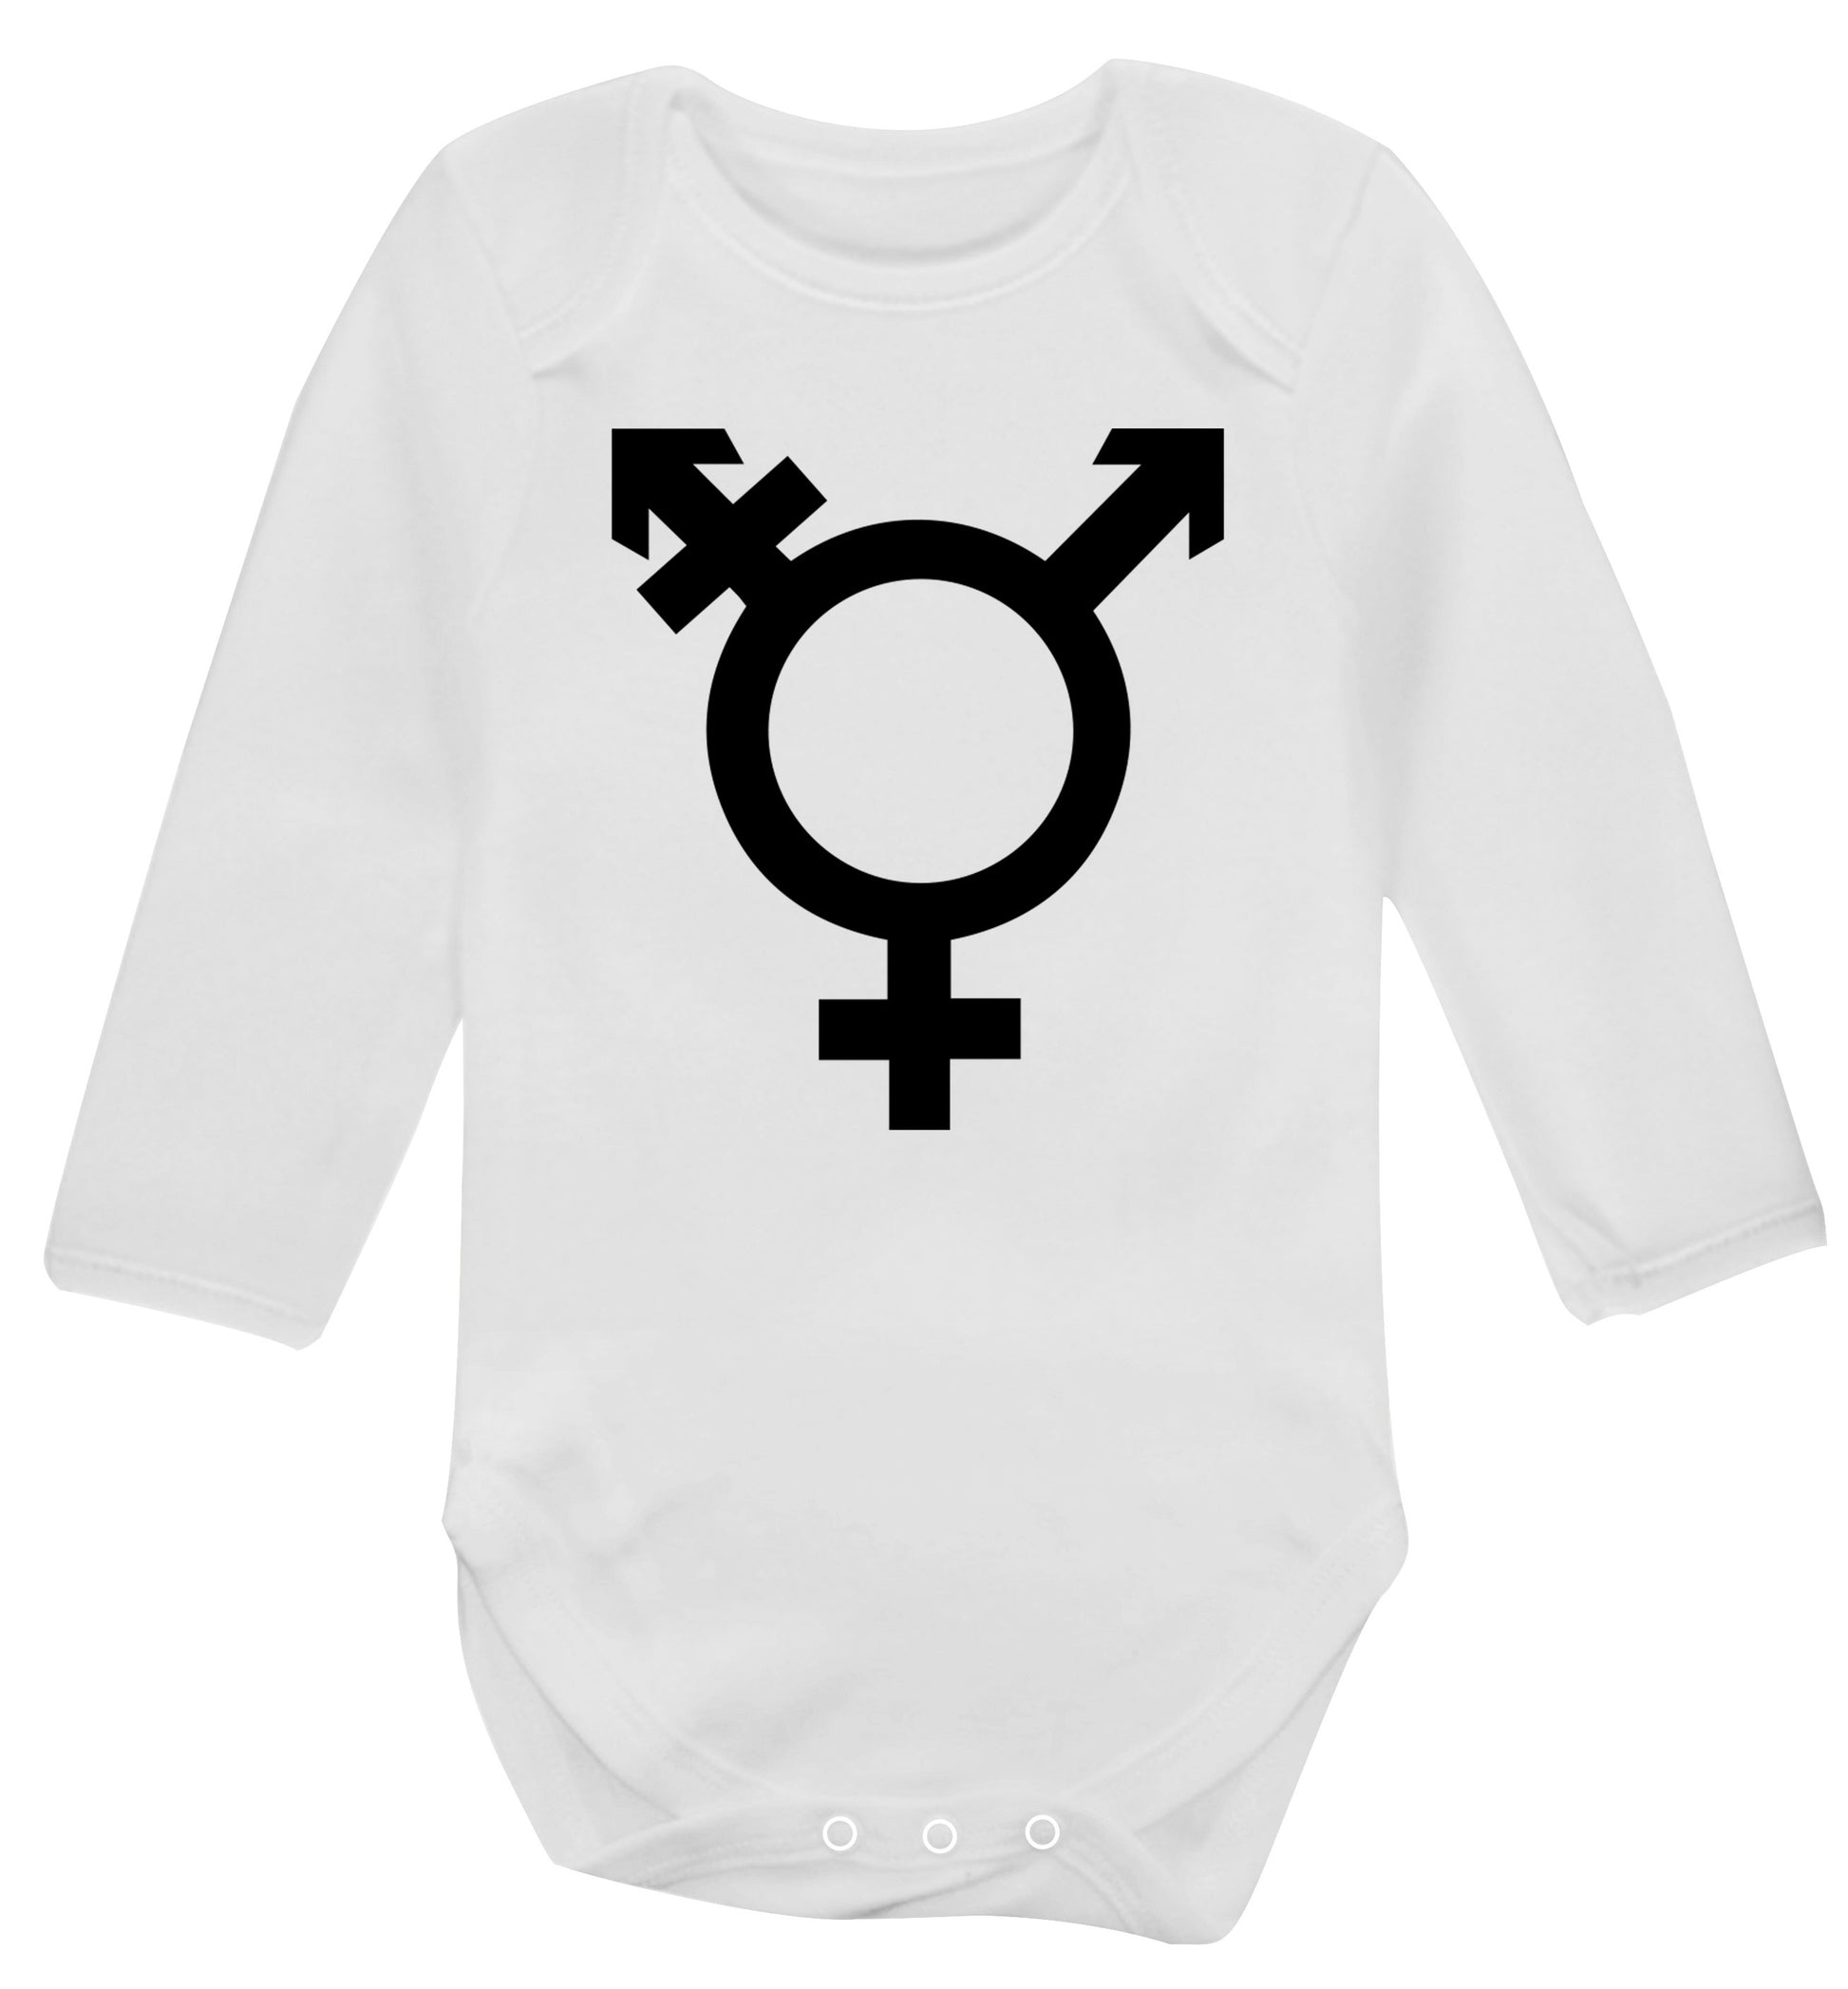 Gender neutral symbol large Baby Vest long sleeved white 6-12 months